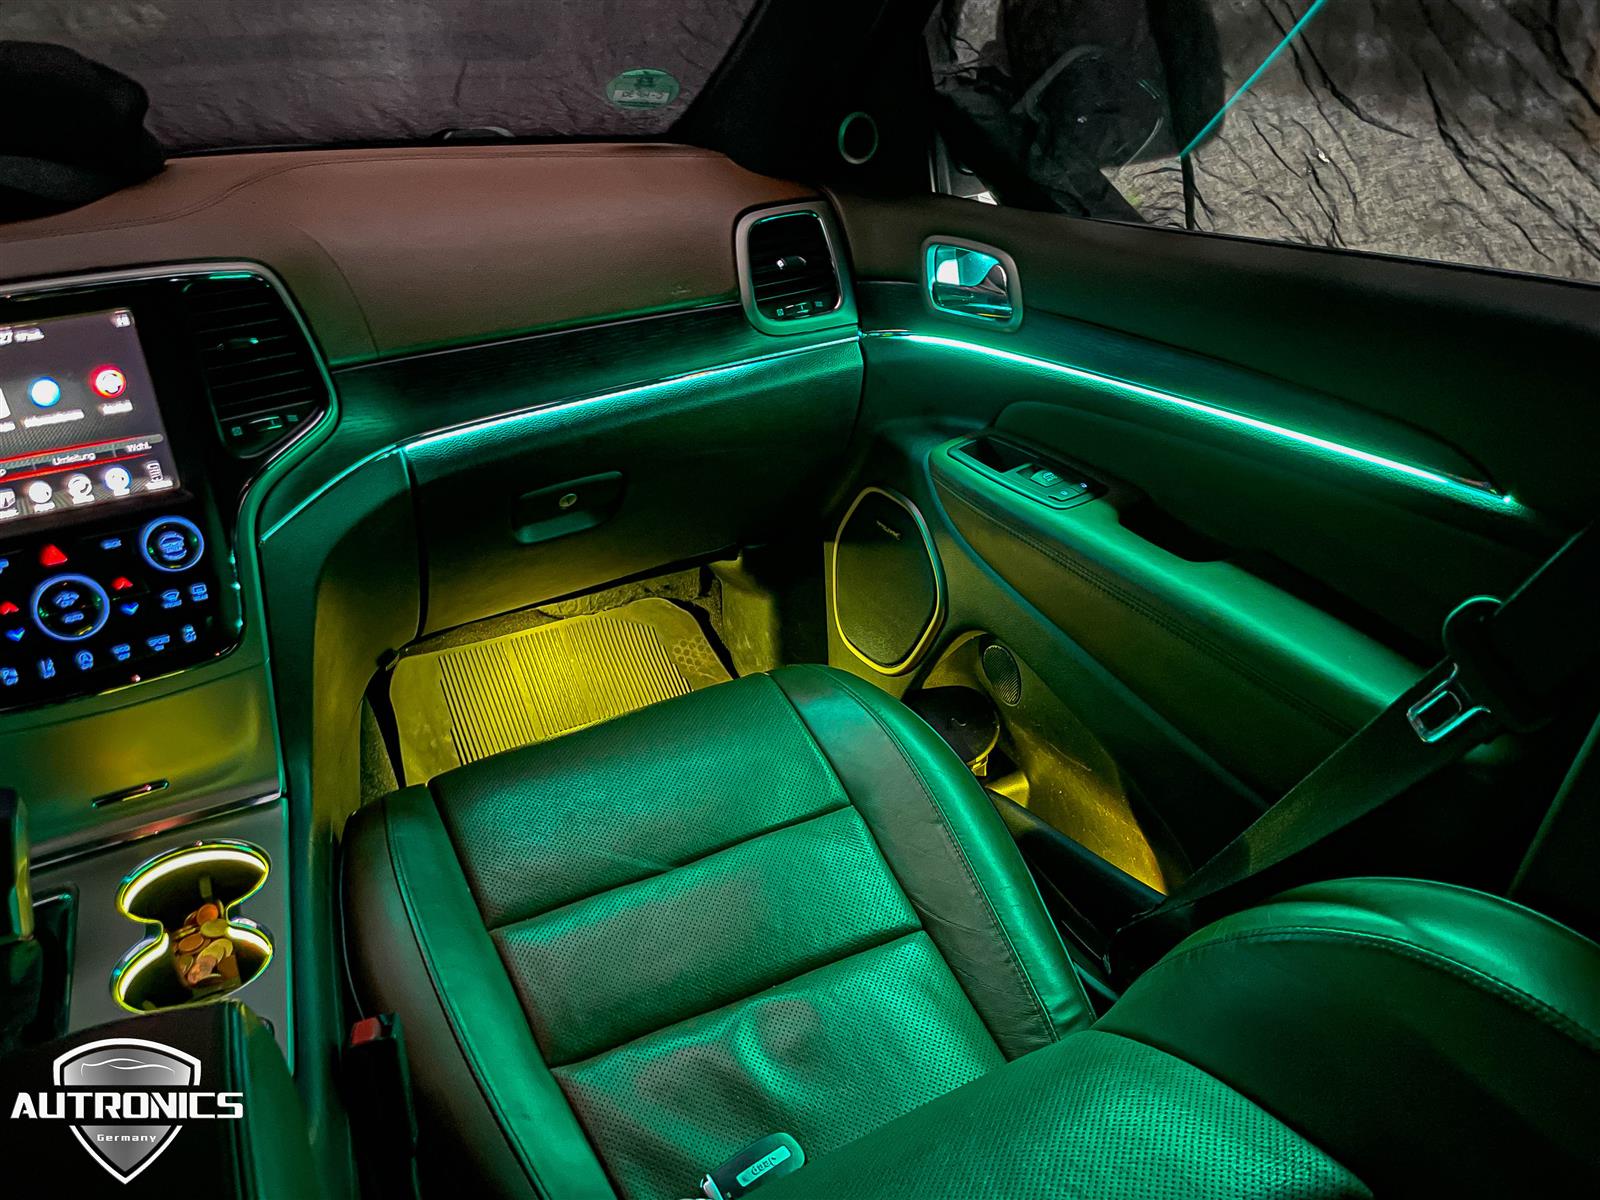 Ambientebeleuchtung Nachrüsten im Auto Inneuchtenraumbeleuchtung Belung geeignet für Jeep Grand Cherokee - 02